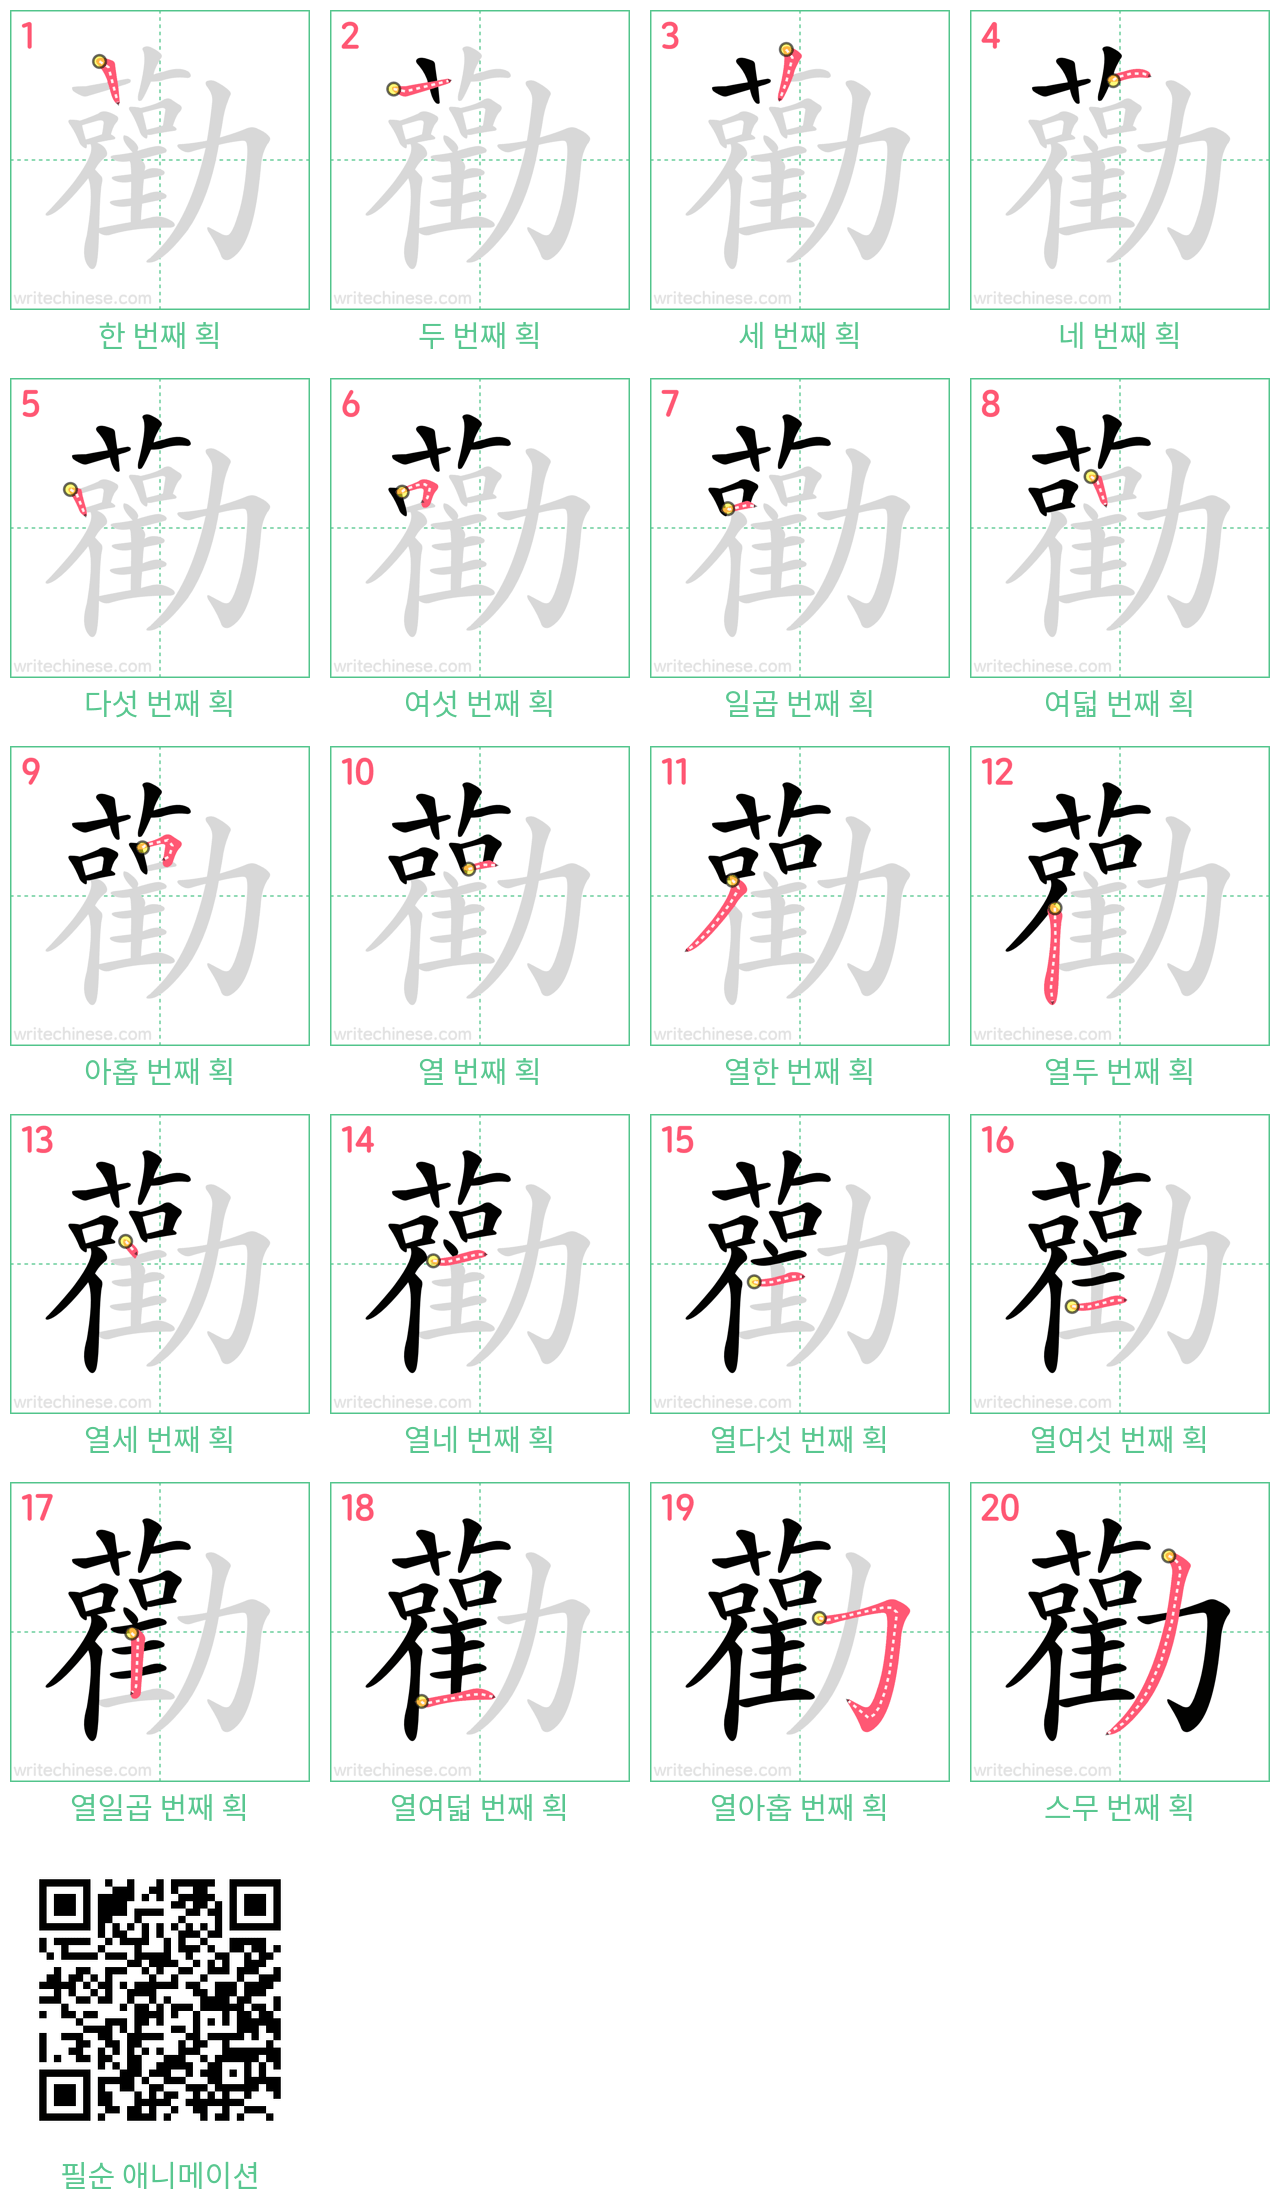 勸 step-by-step stroke order diagrams